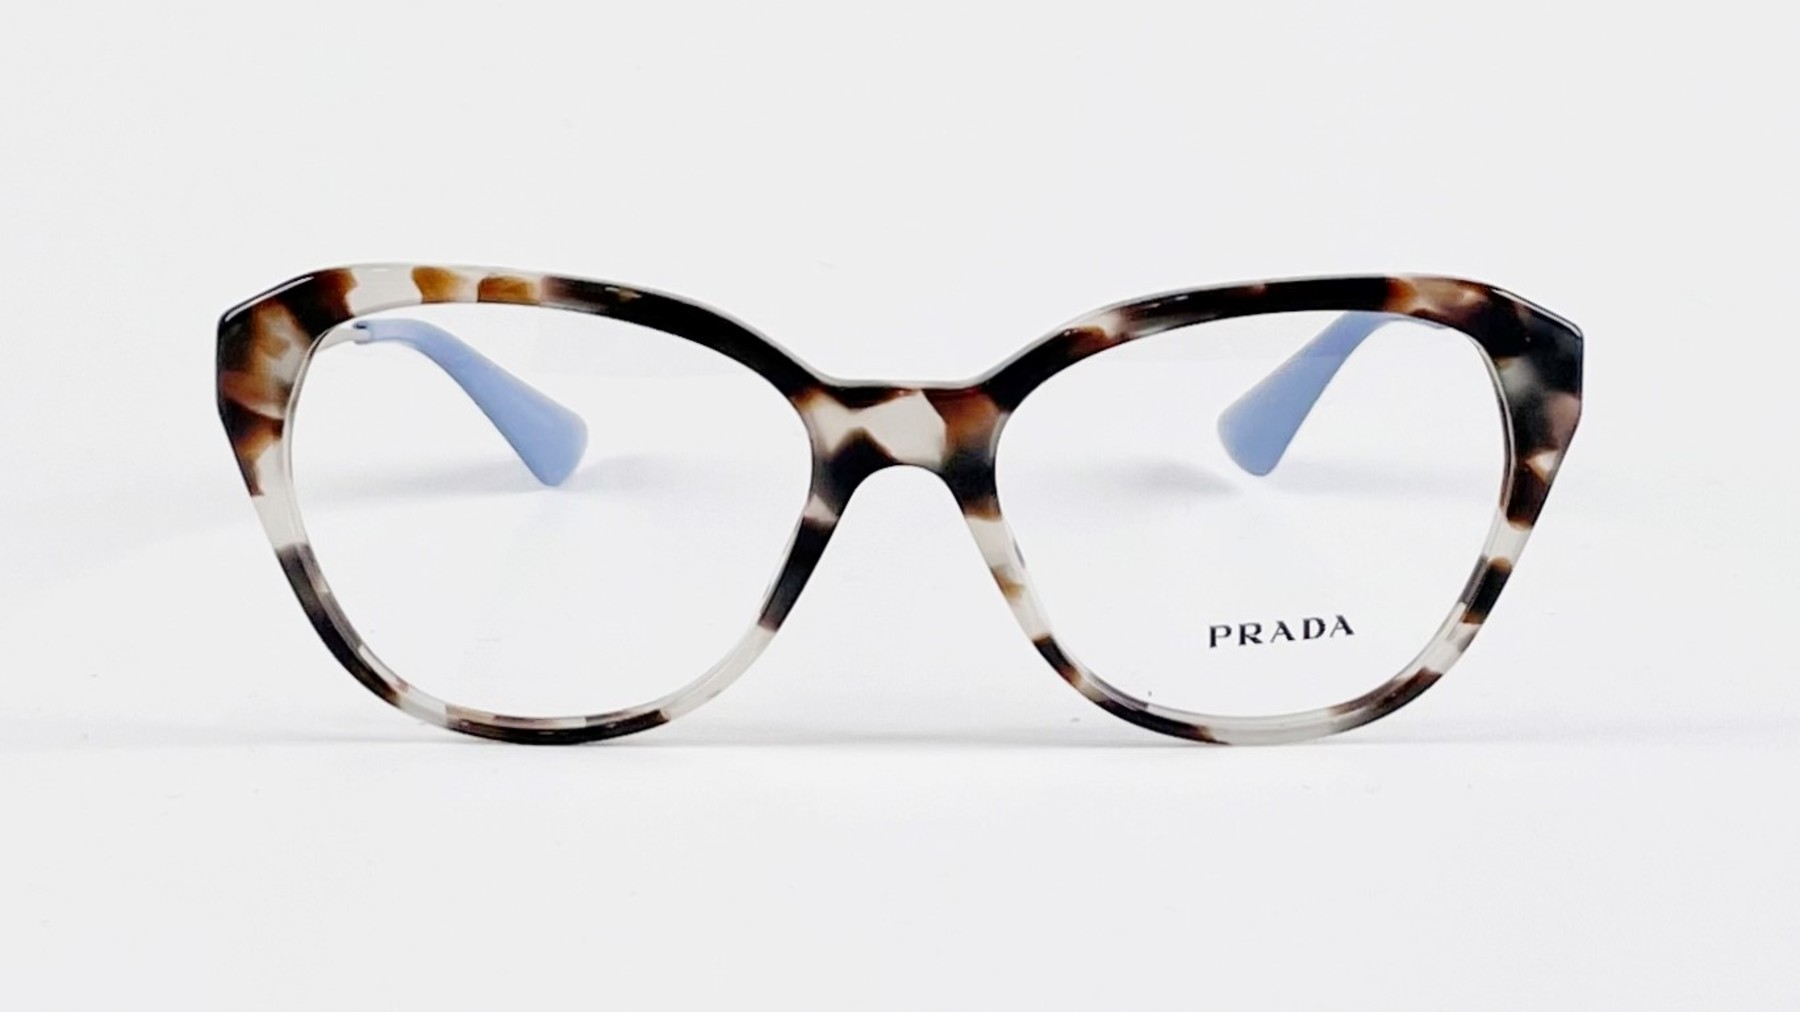 PRADA VPR 28S, Korean glasses, sunglasses, eyeglasses, glasses